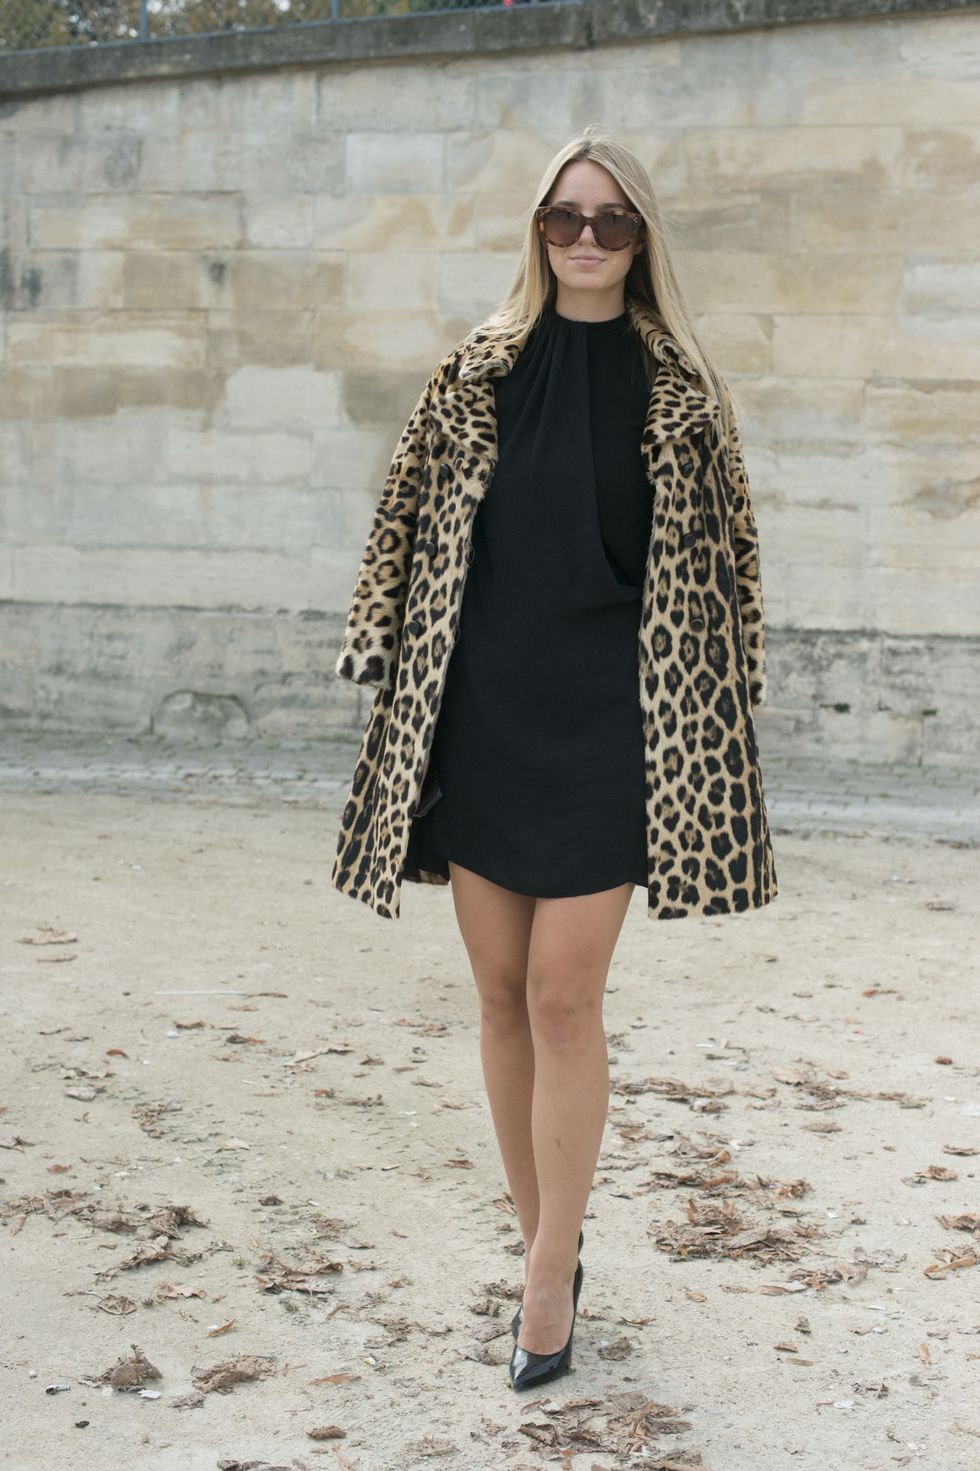 Девушка в черном мини платье и леопардовом пальто - 2013 год